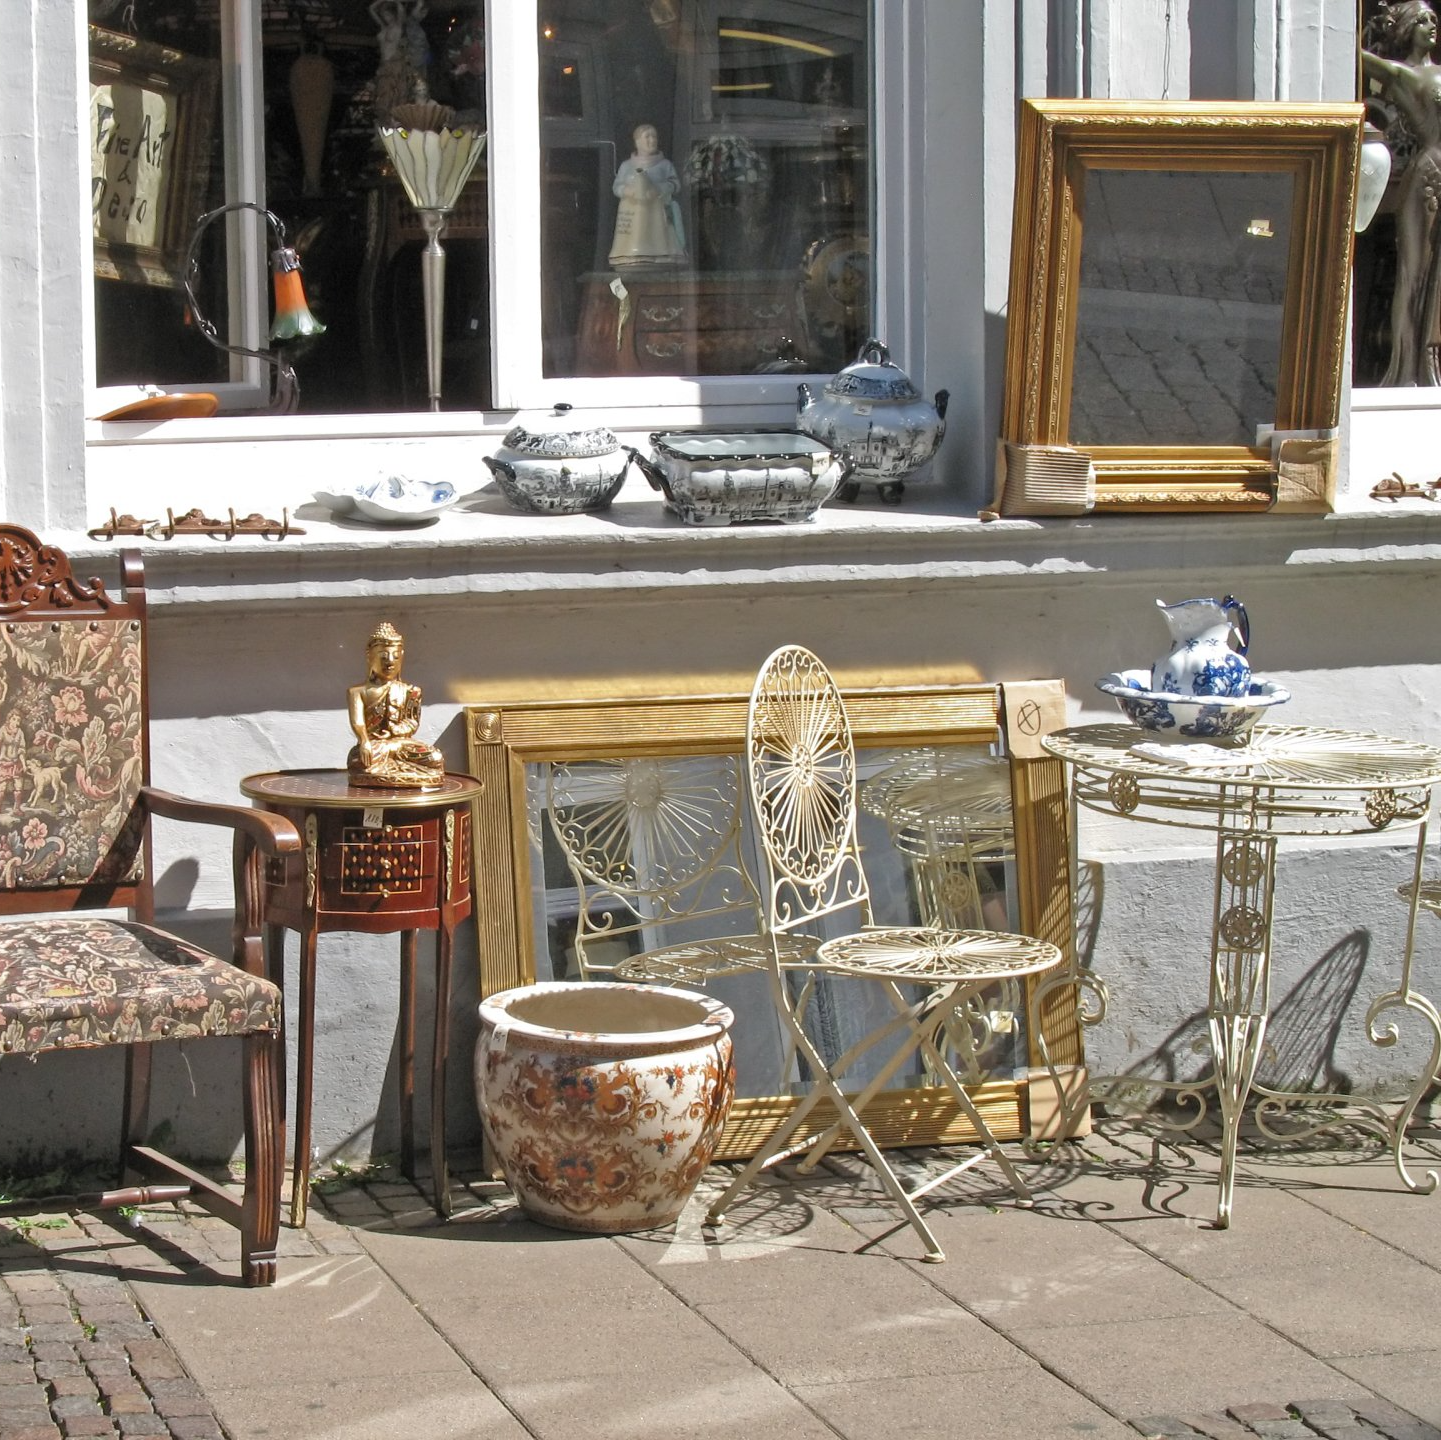 Fauteil ancien, ensemble de chaise et de table sur un trottoir au soleil